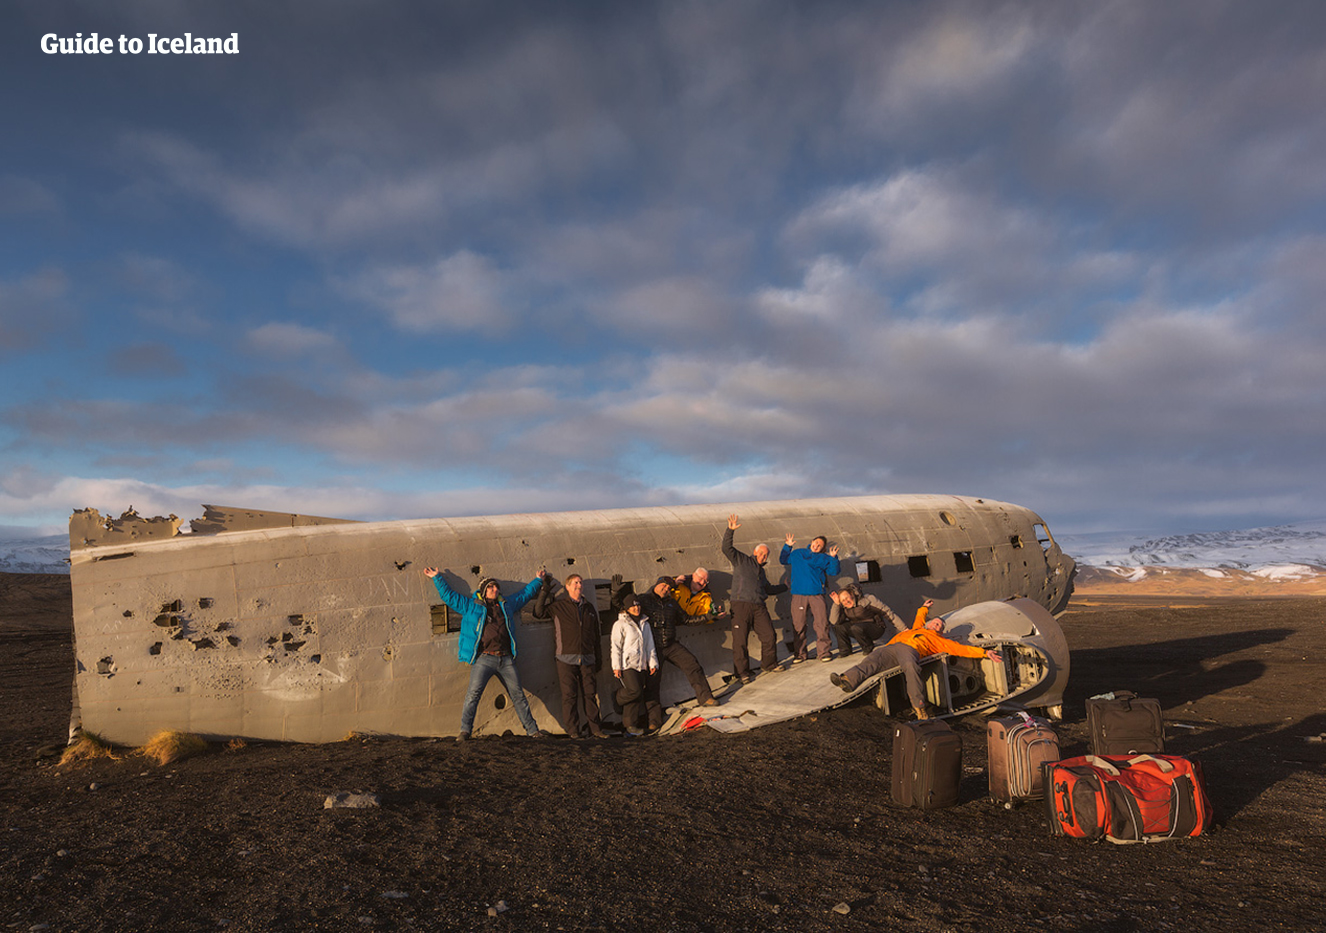 Nell'Islanda meridionale, c'è un vecchio relitto aereo da visitare.